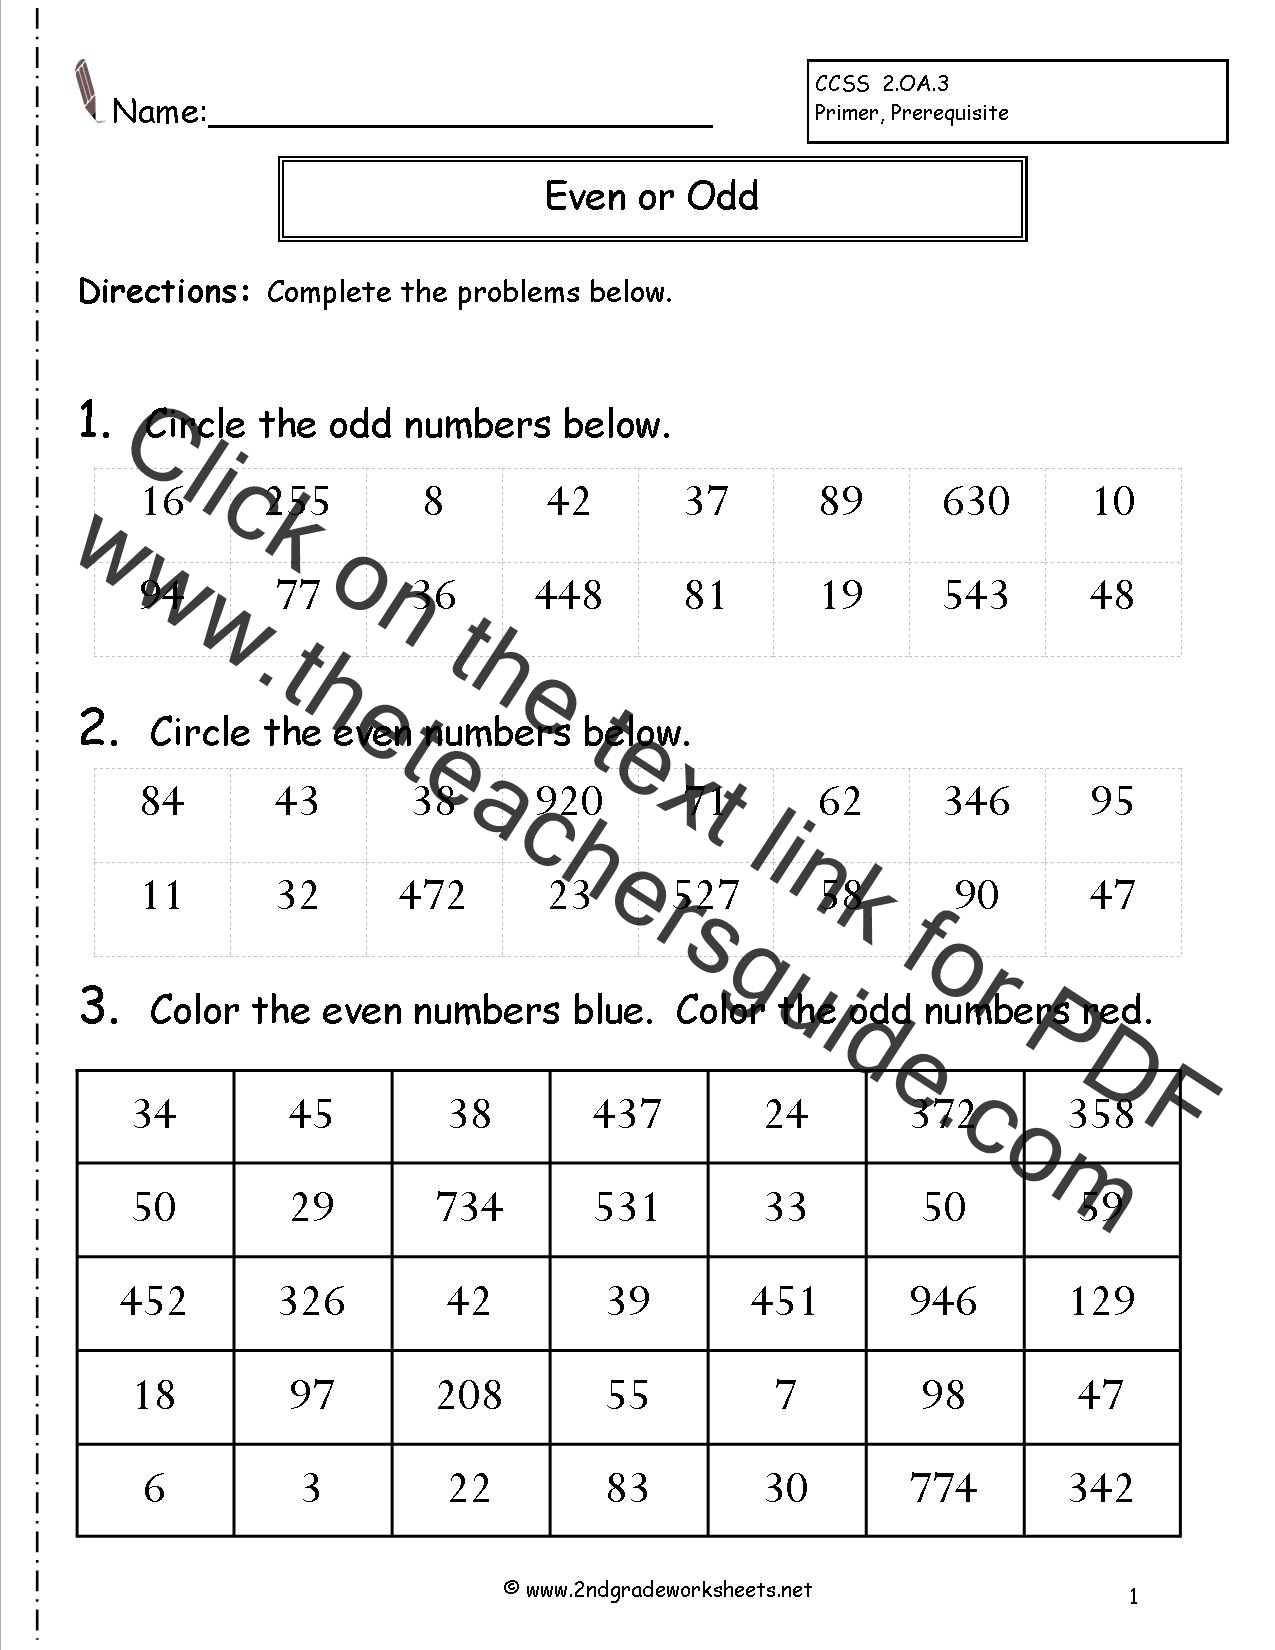 odd-and-even-numbers-worksheet-odd-even-worksheets-worksheet-grade-number-math-kindergarten-1st